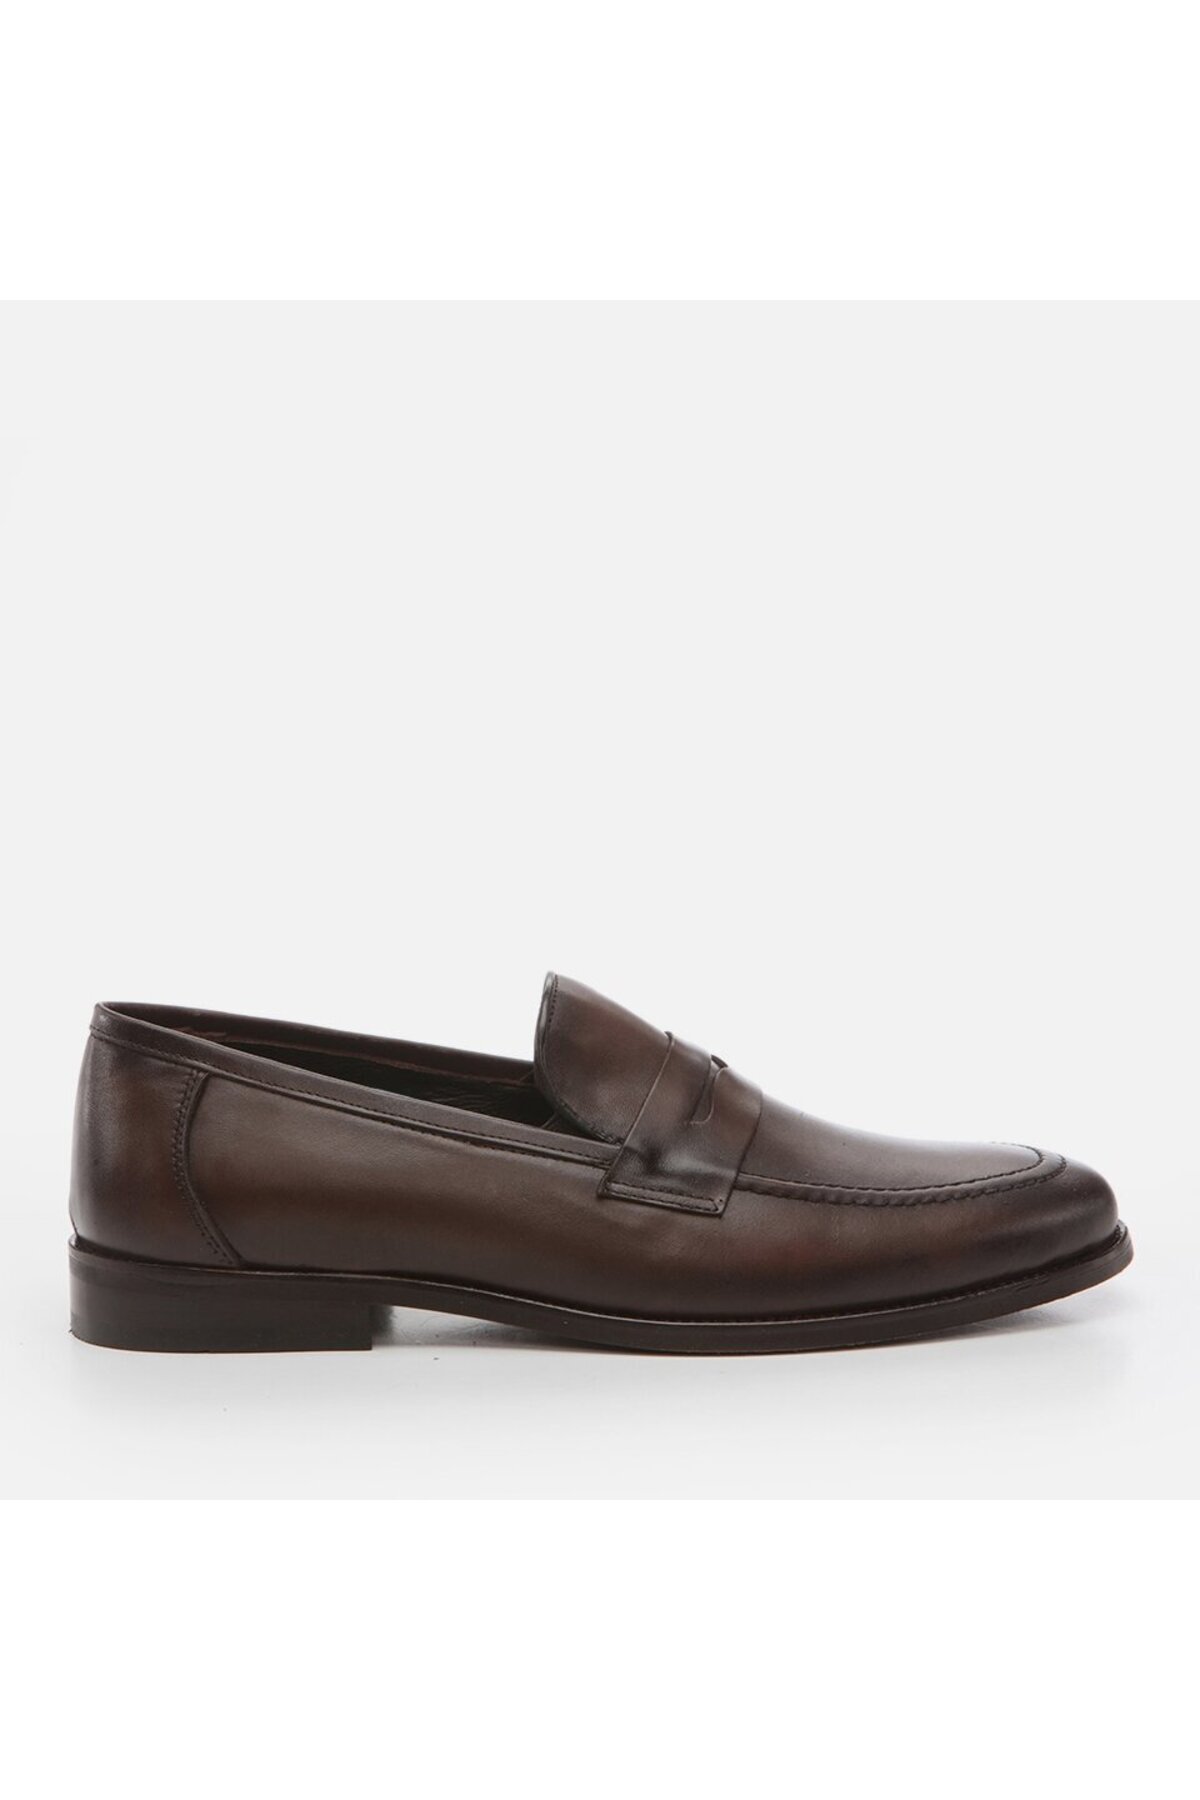 Hotiç Genuine Leather Brown Men's Loafer